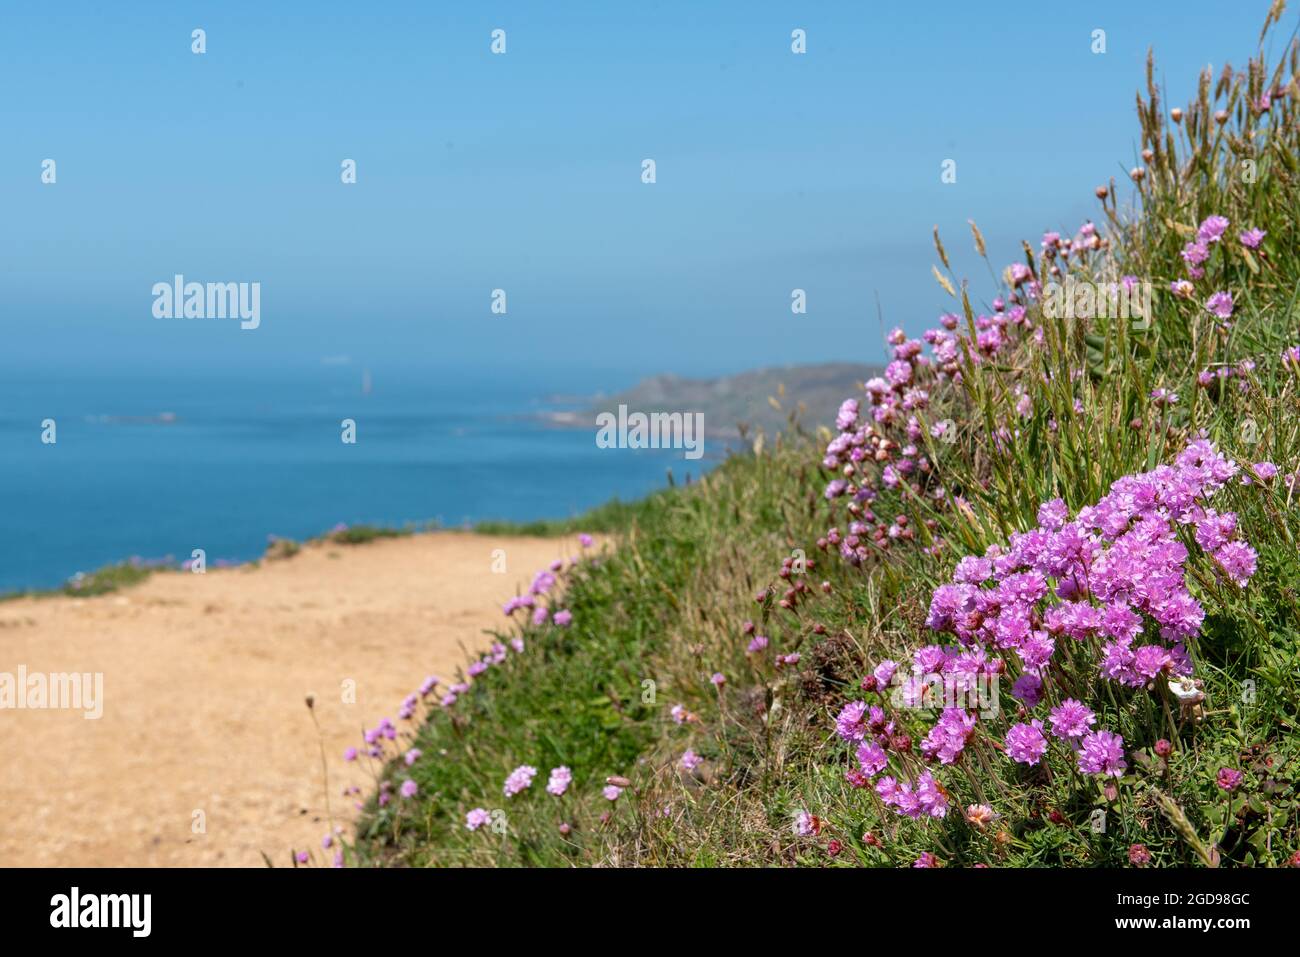 Armeria maritima-Gazon d'Espagne-Oeillet de mer sur le bord d'une falaise, Francia, Manica, Printemps. Foto Stock